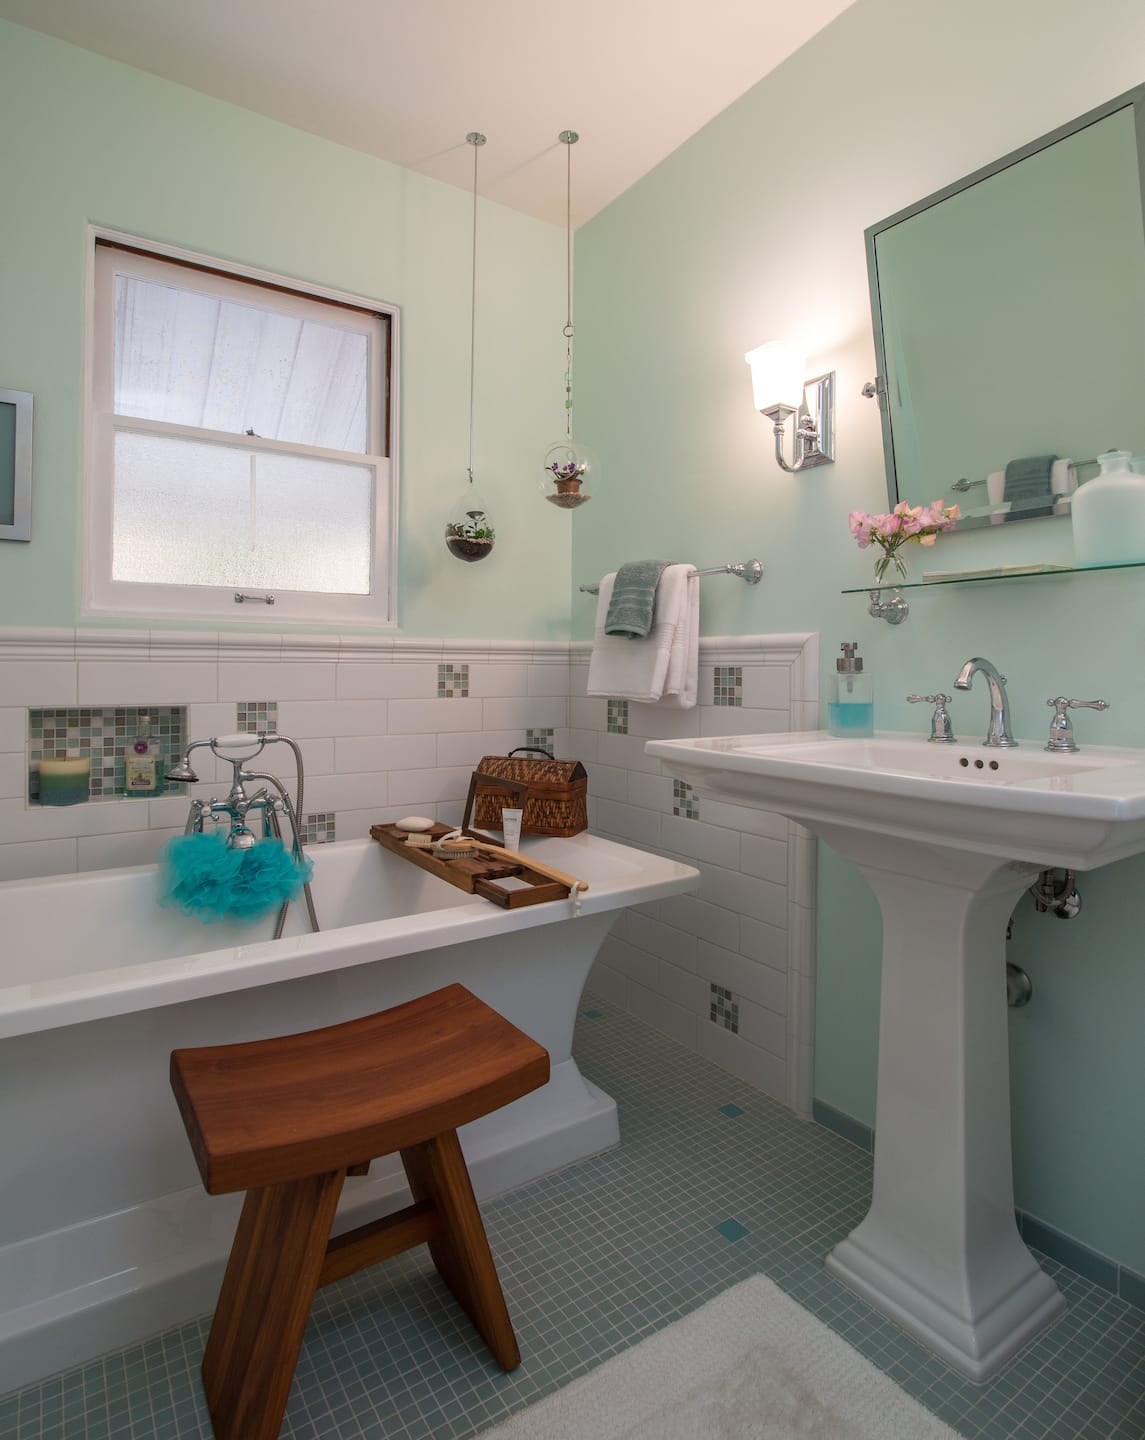 Стены в ванной хрущевки. Ванная комната с окрашенными стенами. Ванная плитка и краска. Ванная комната плитка и краска. Ваневя поитка и краска.